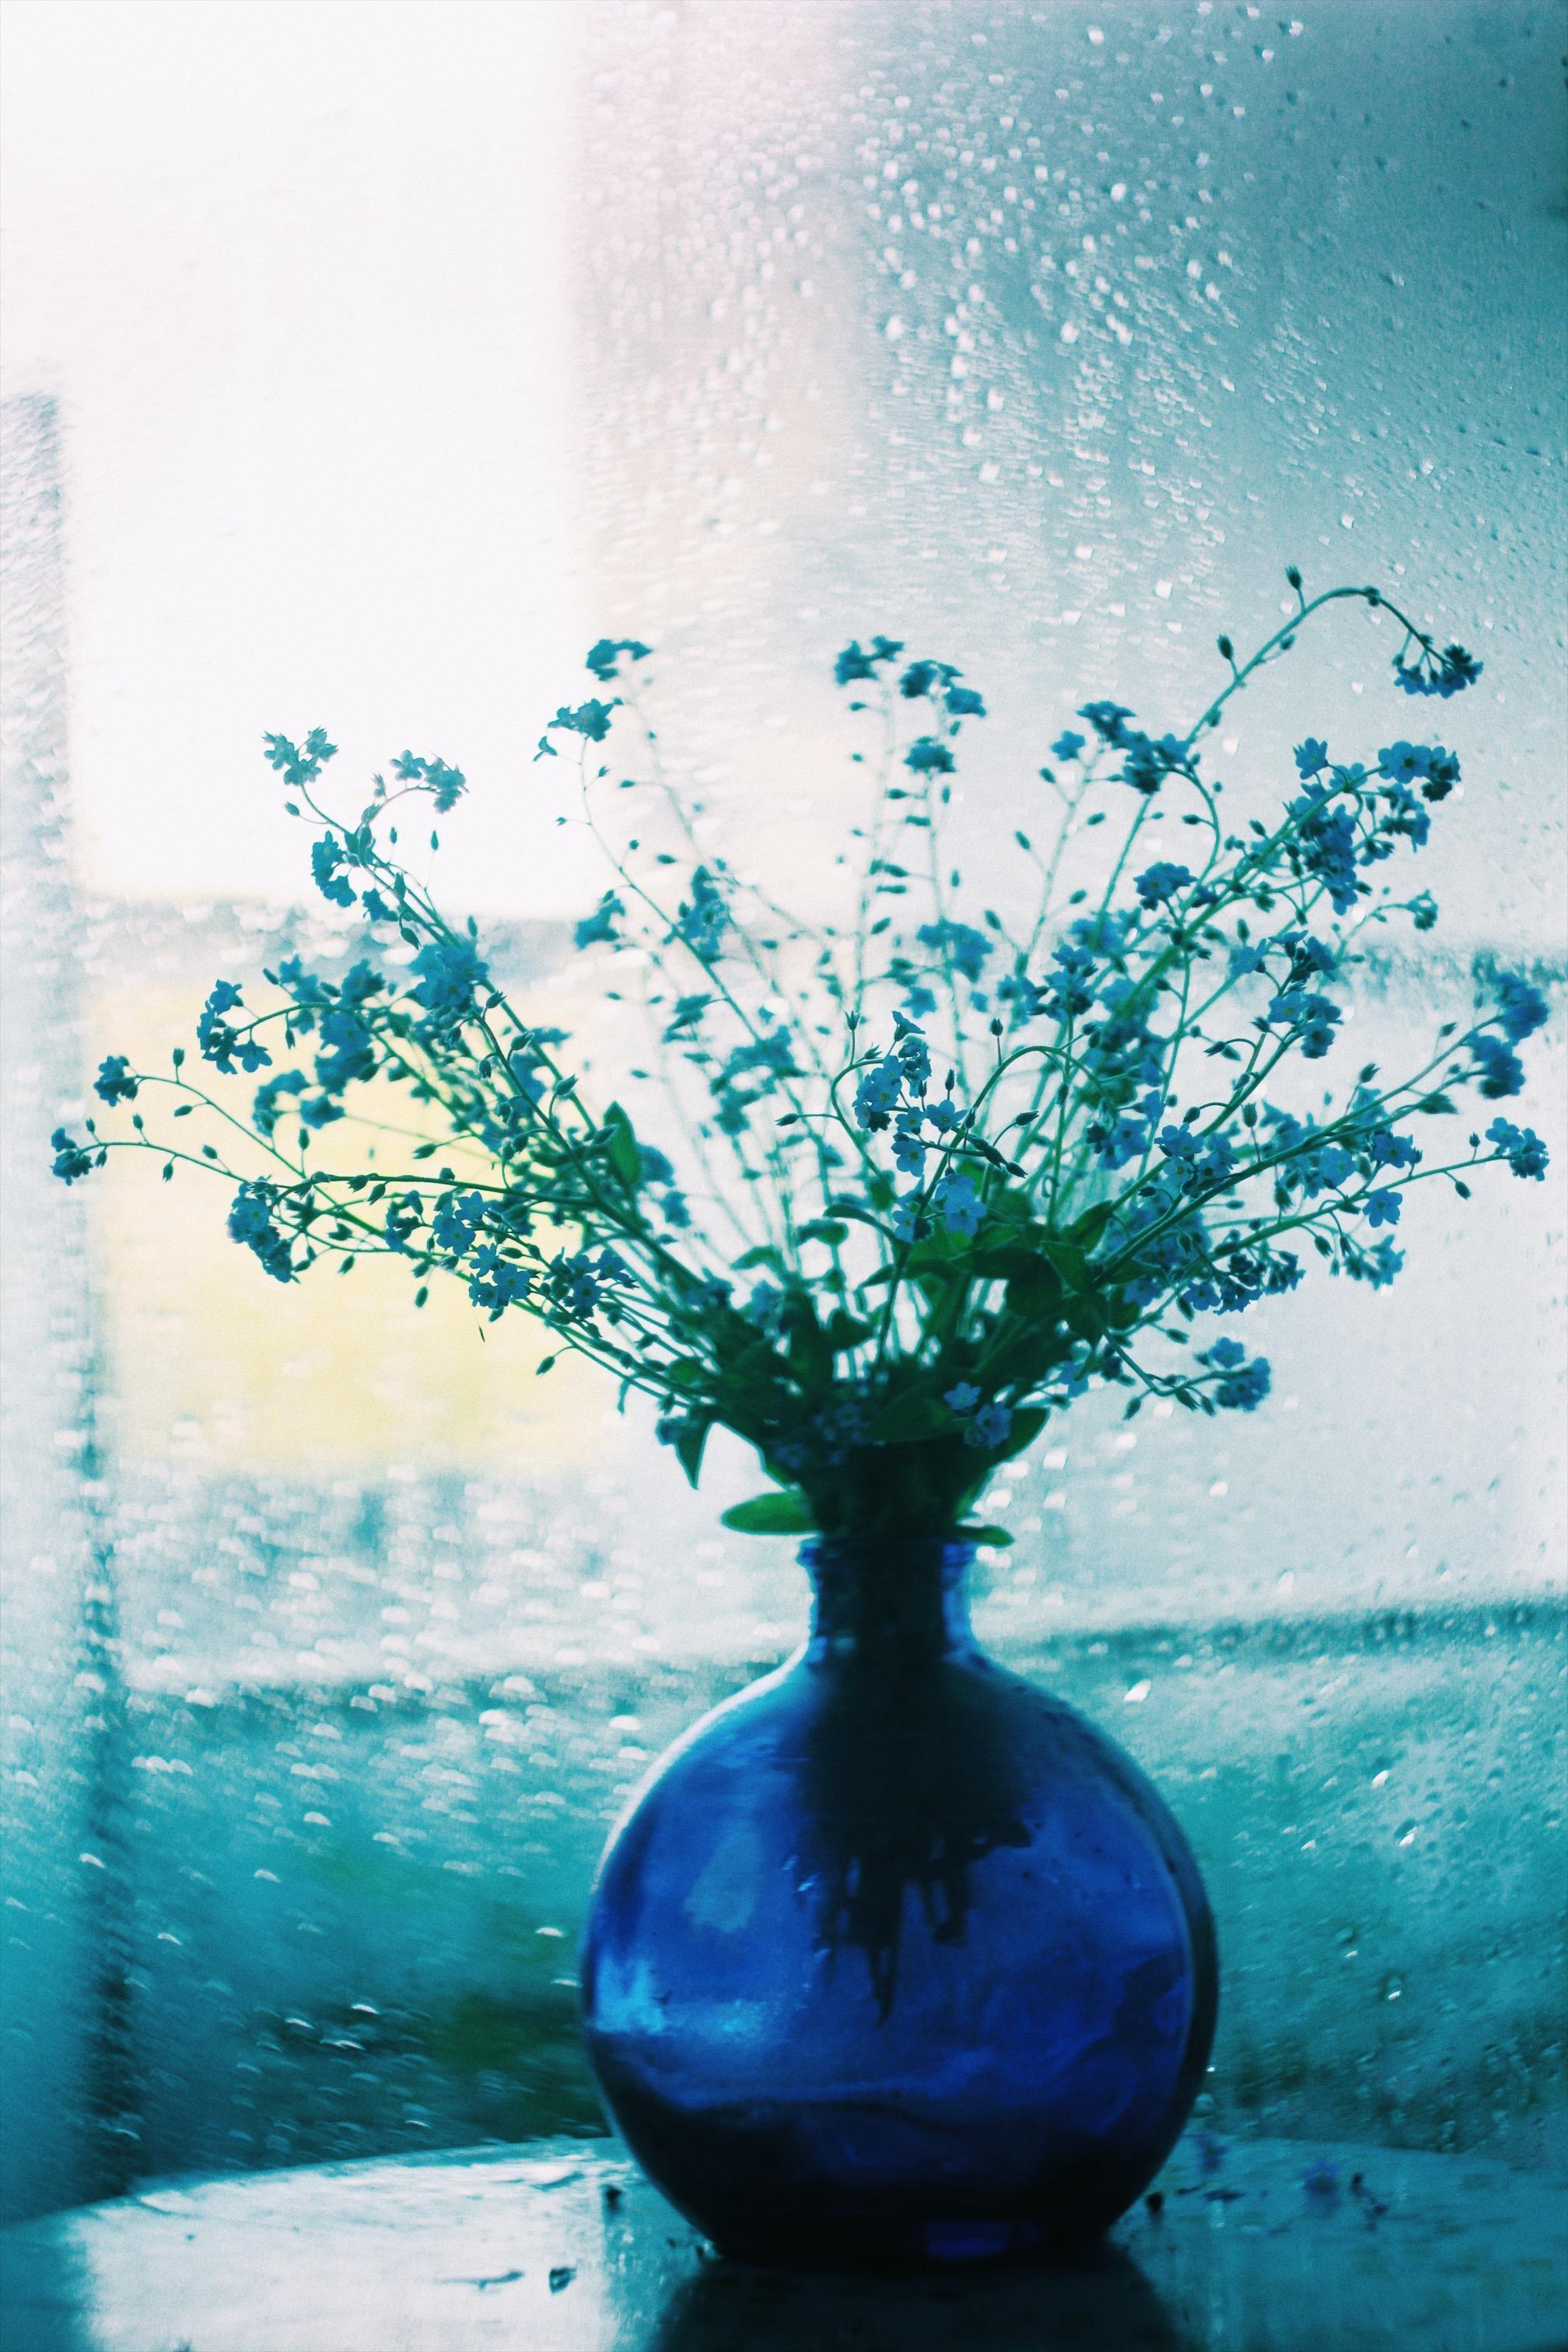 Warum ich den Regen liebe 💙 🌦☔️
#blumen#spring#couchliebt#home#deco#vase#regen#frühling#april